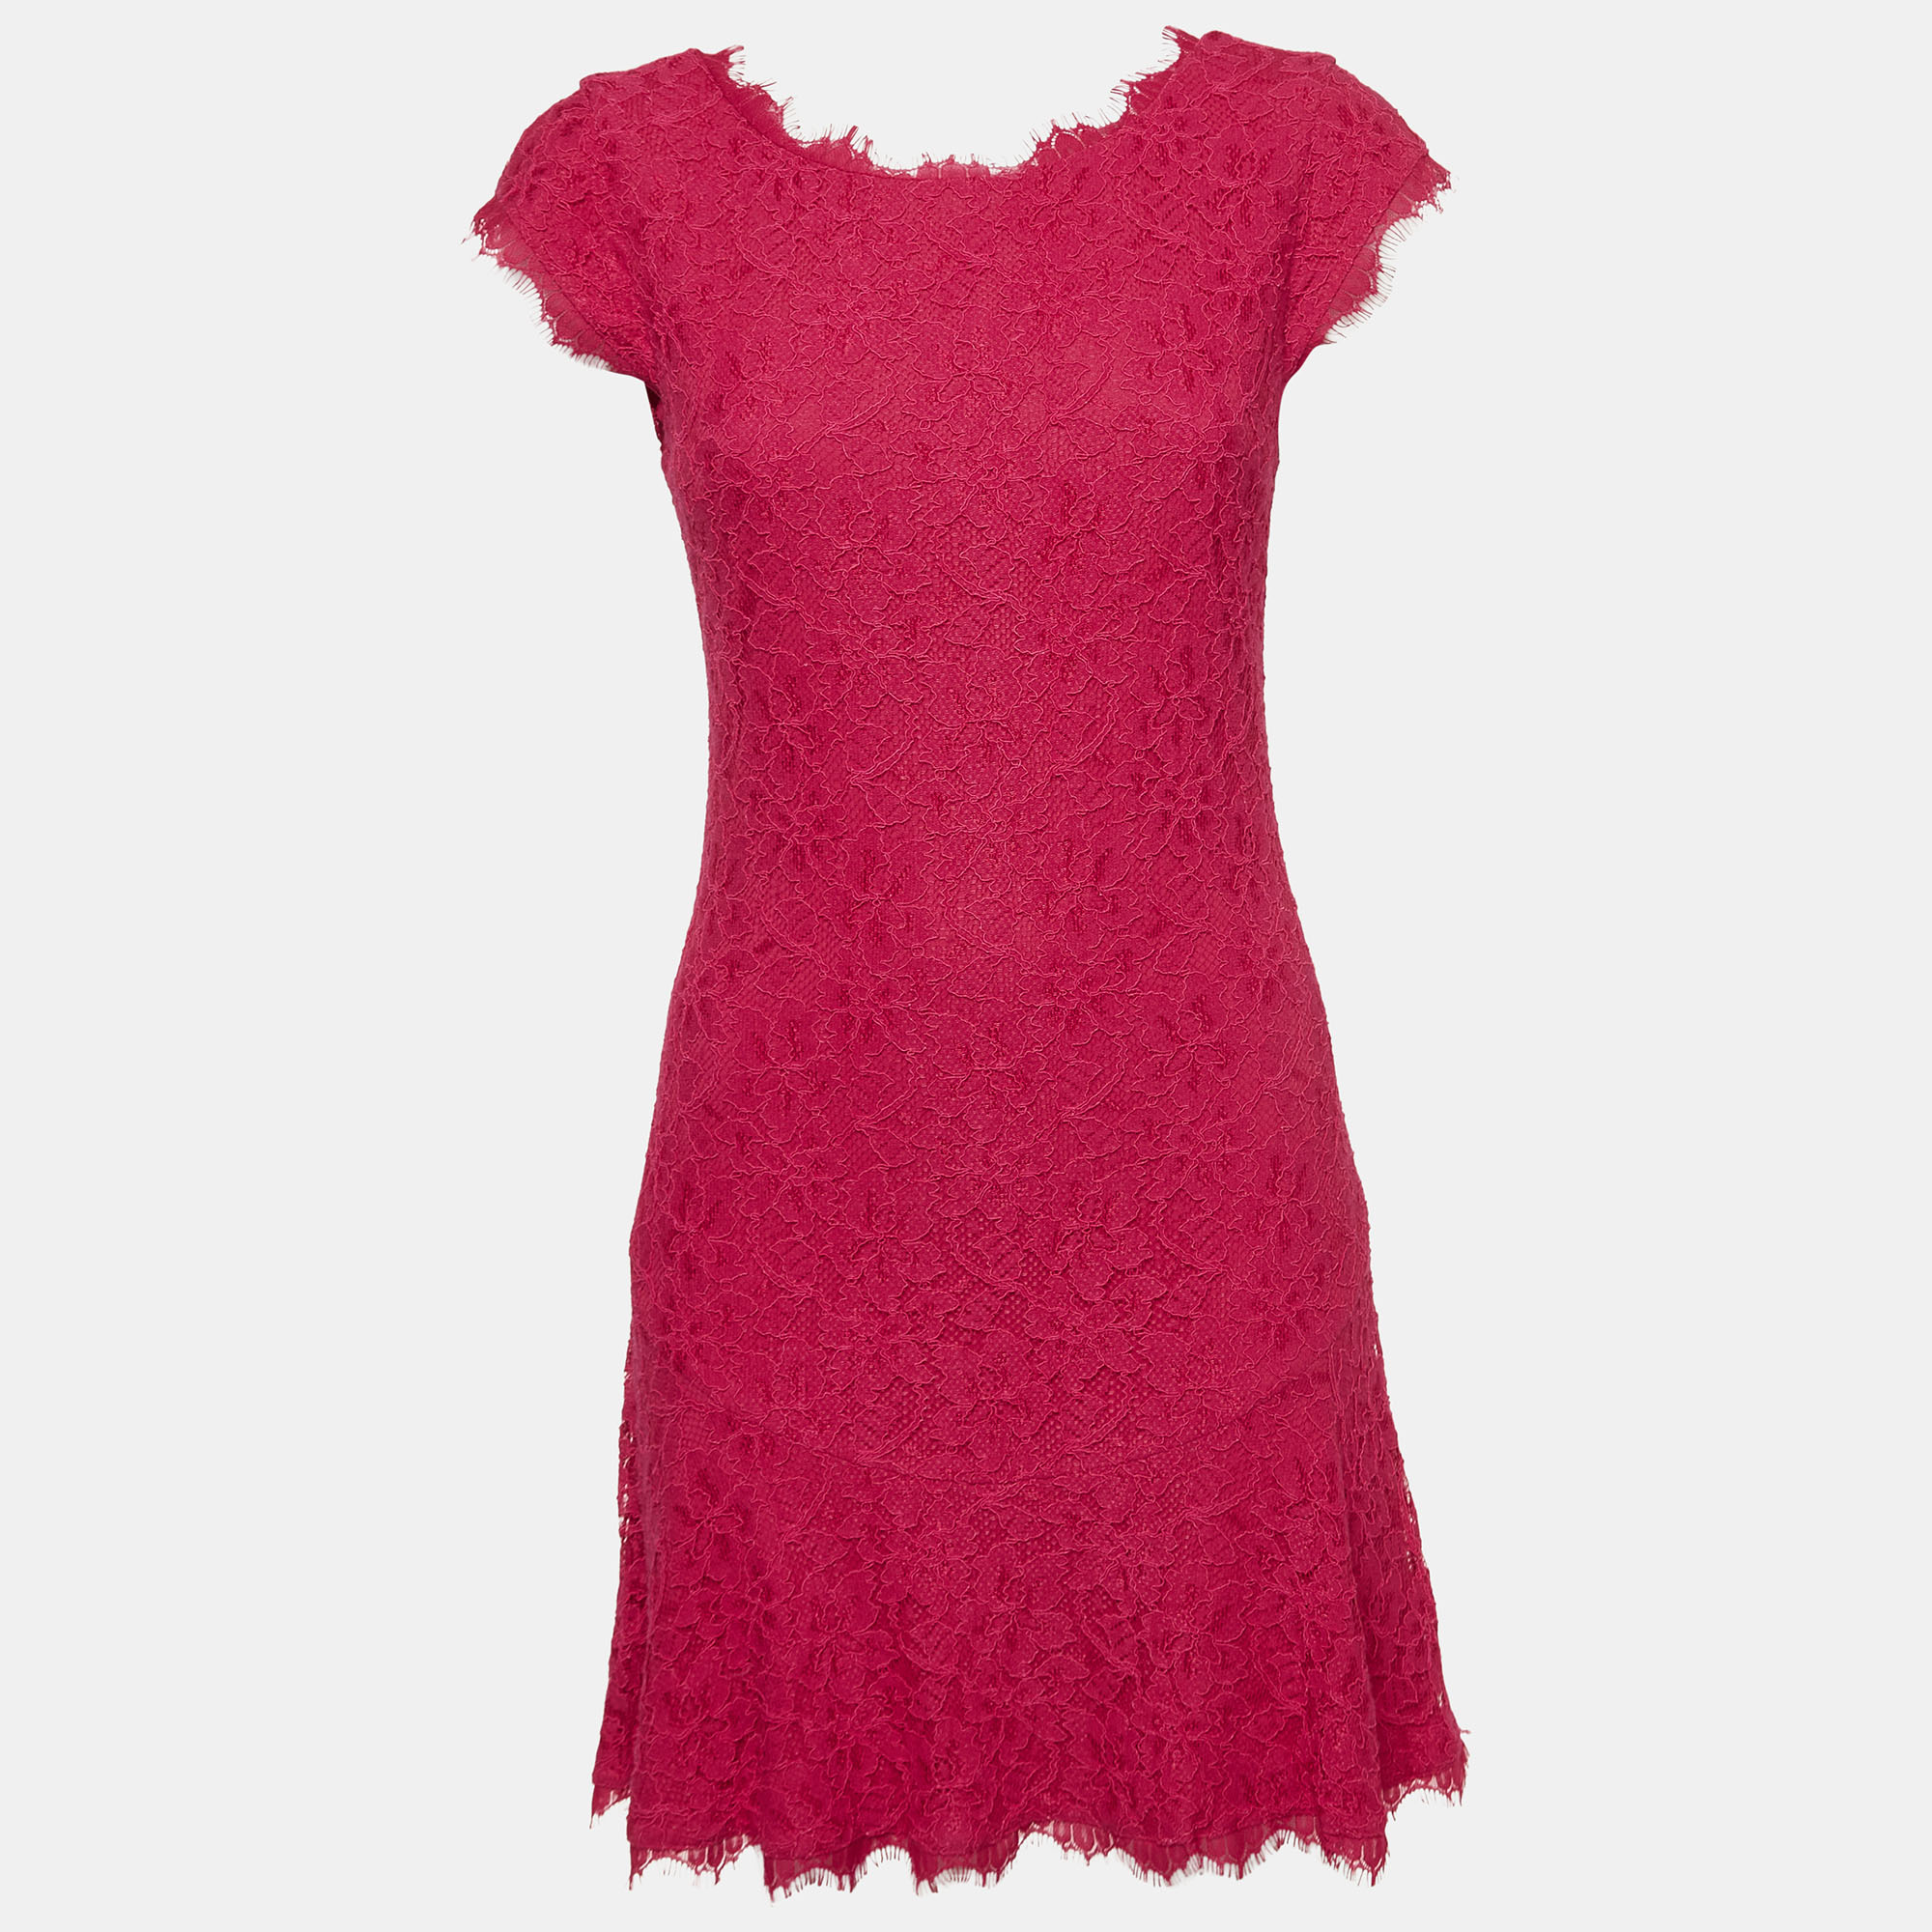 Diane von furstenberg diane von furstenburg pink floral lace sleeveless mini dress m